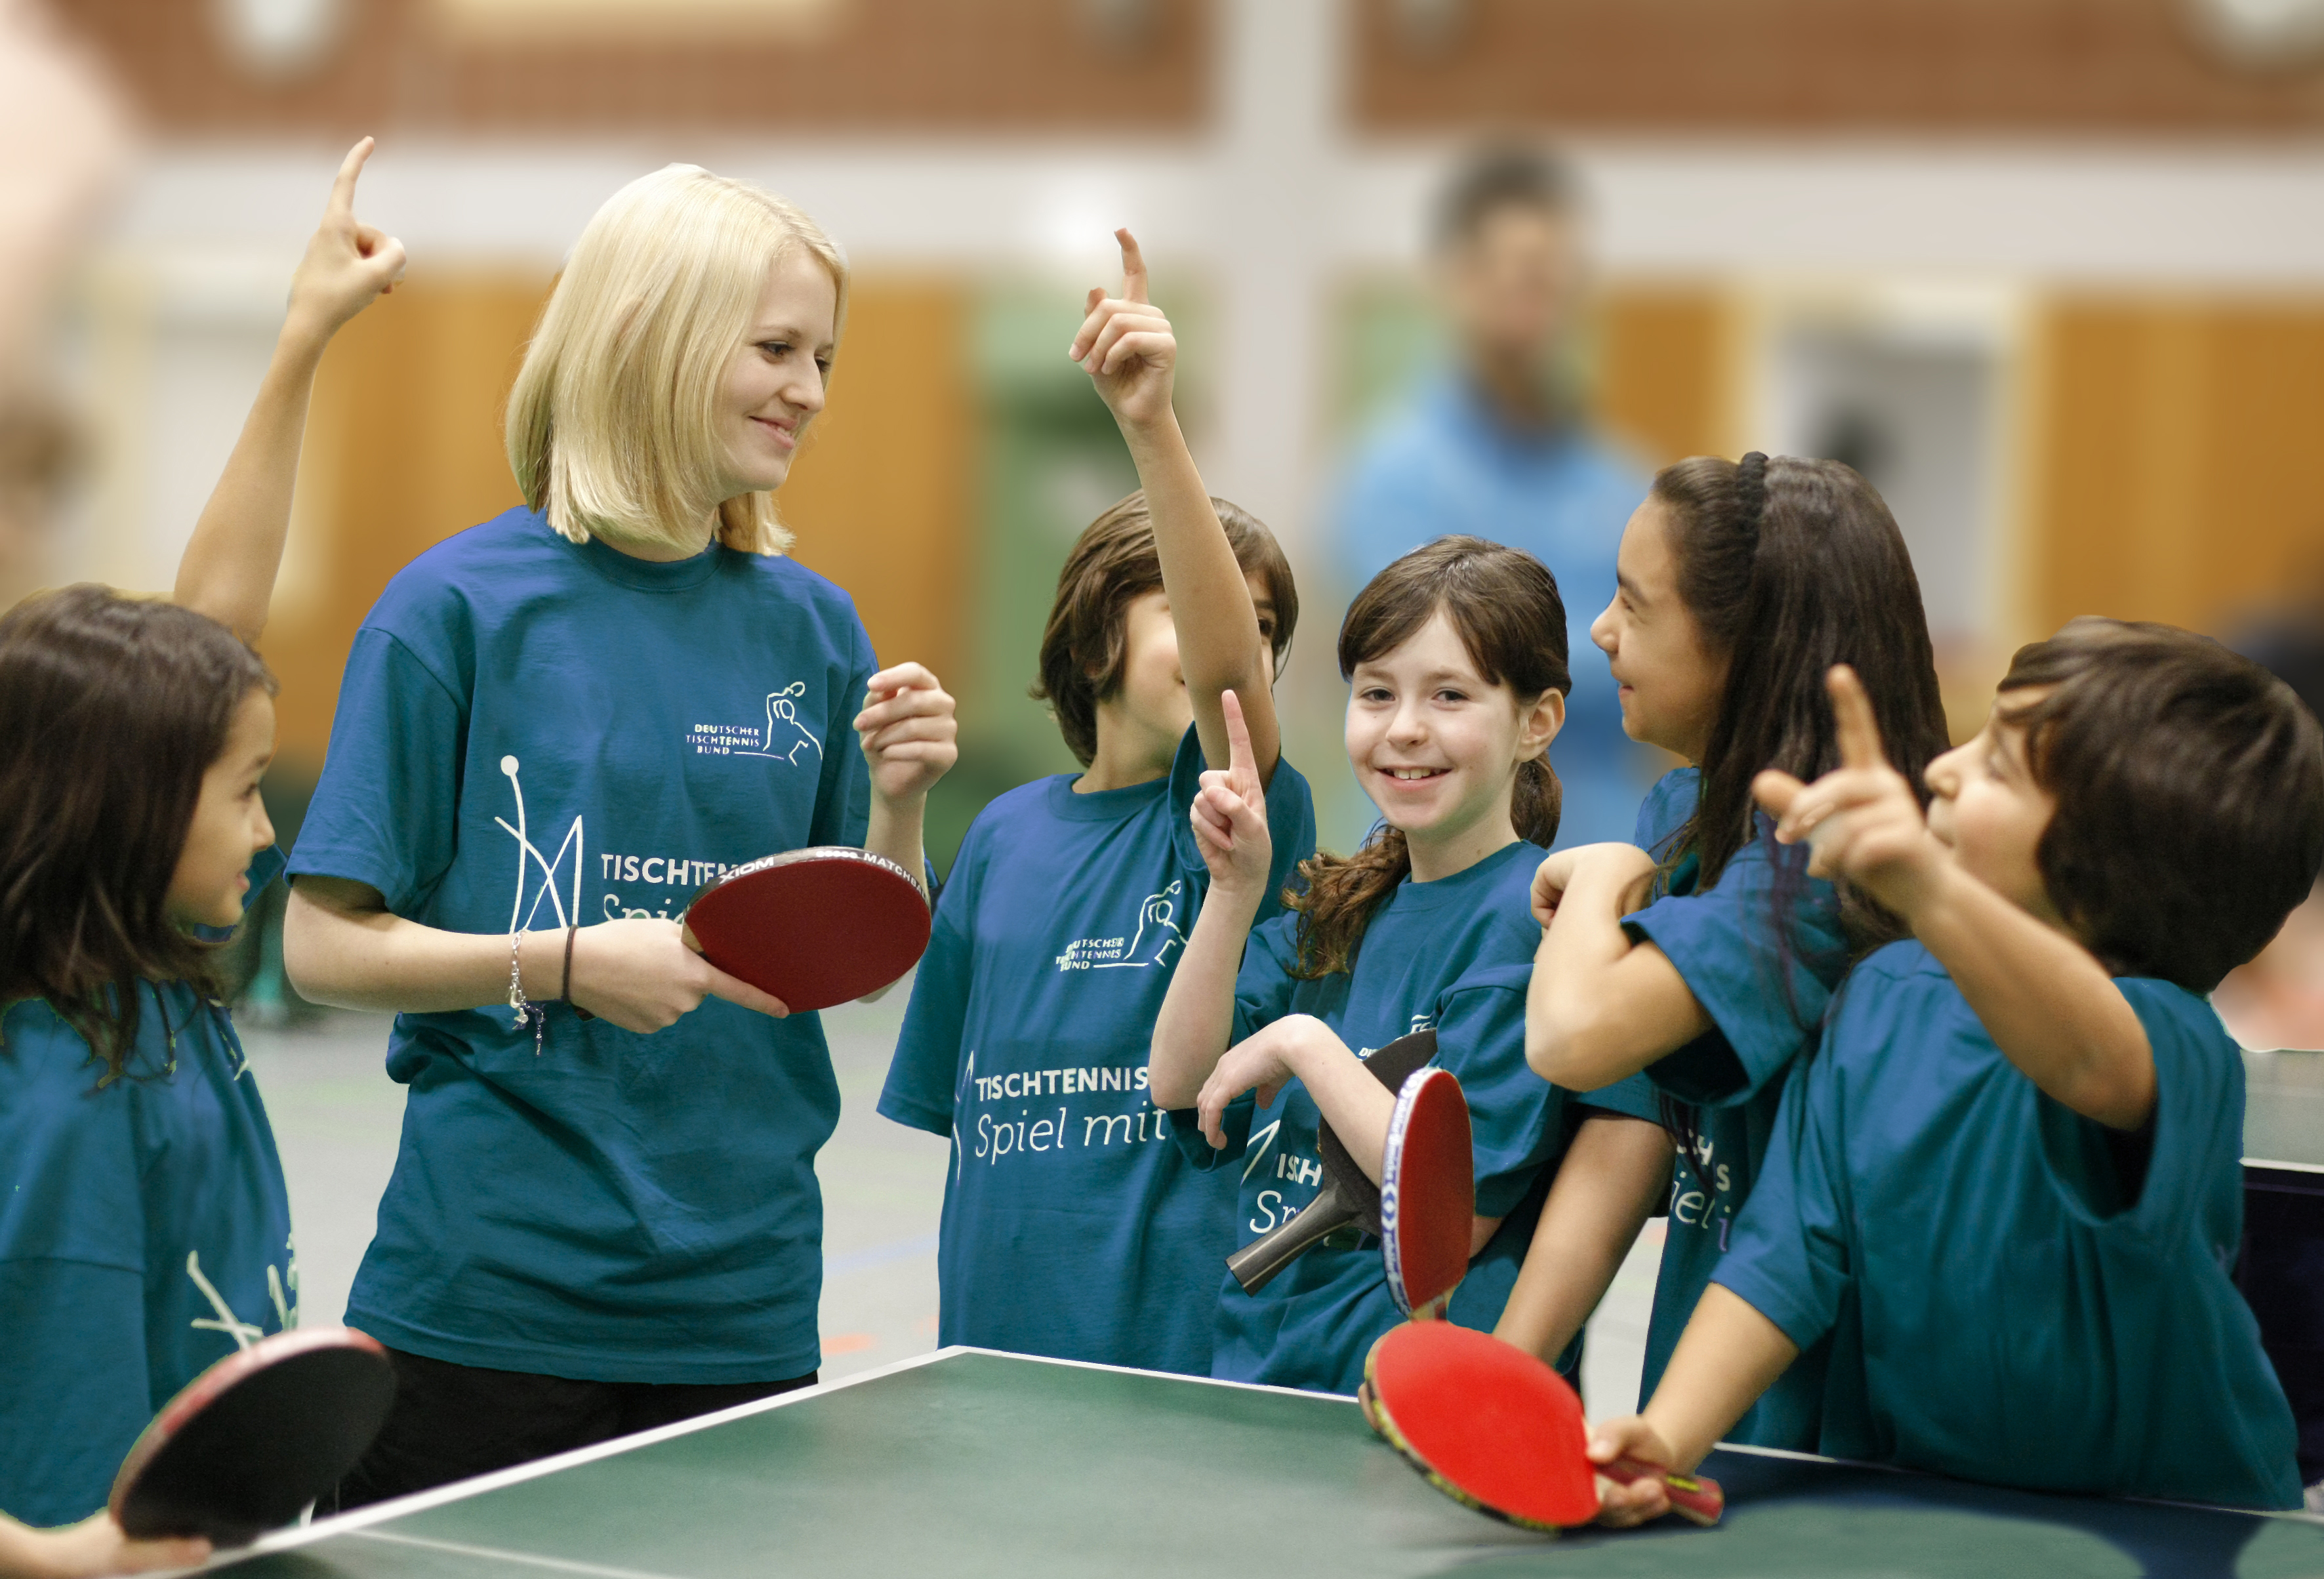 Tischtennis: Spiel mit! – Jetzt schon an das neue Schuljahr denken!